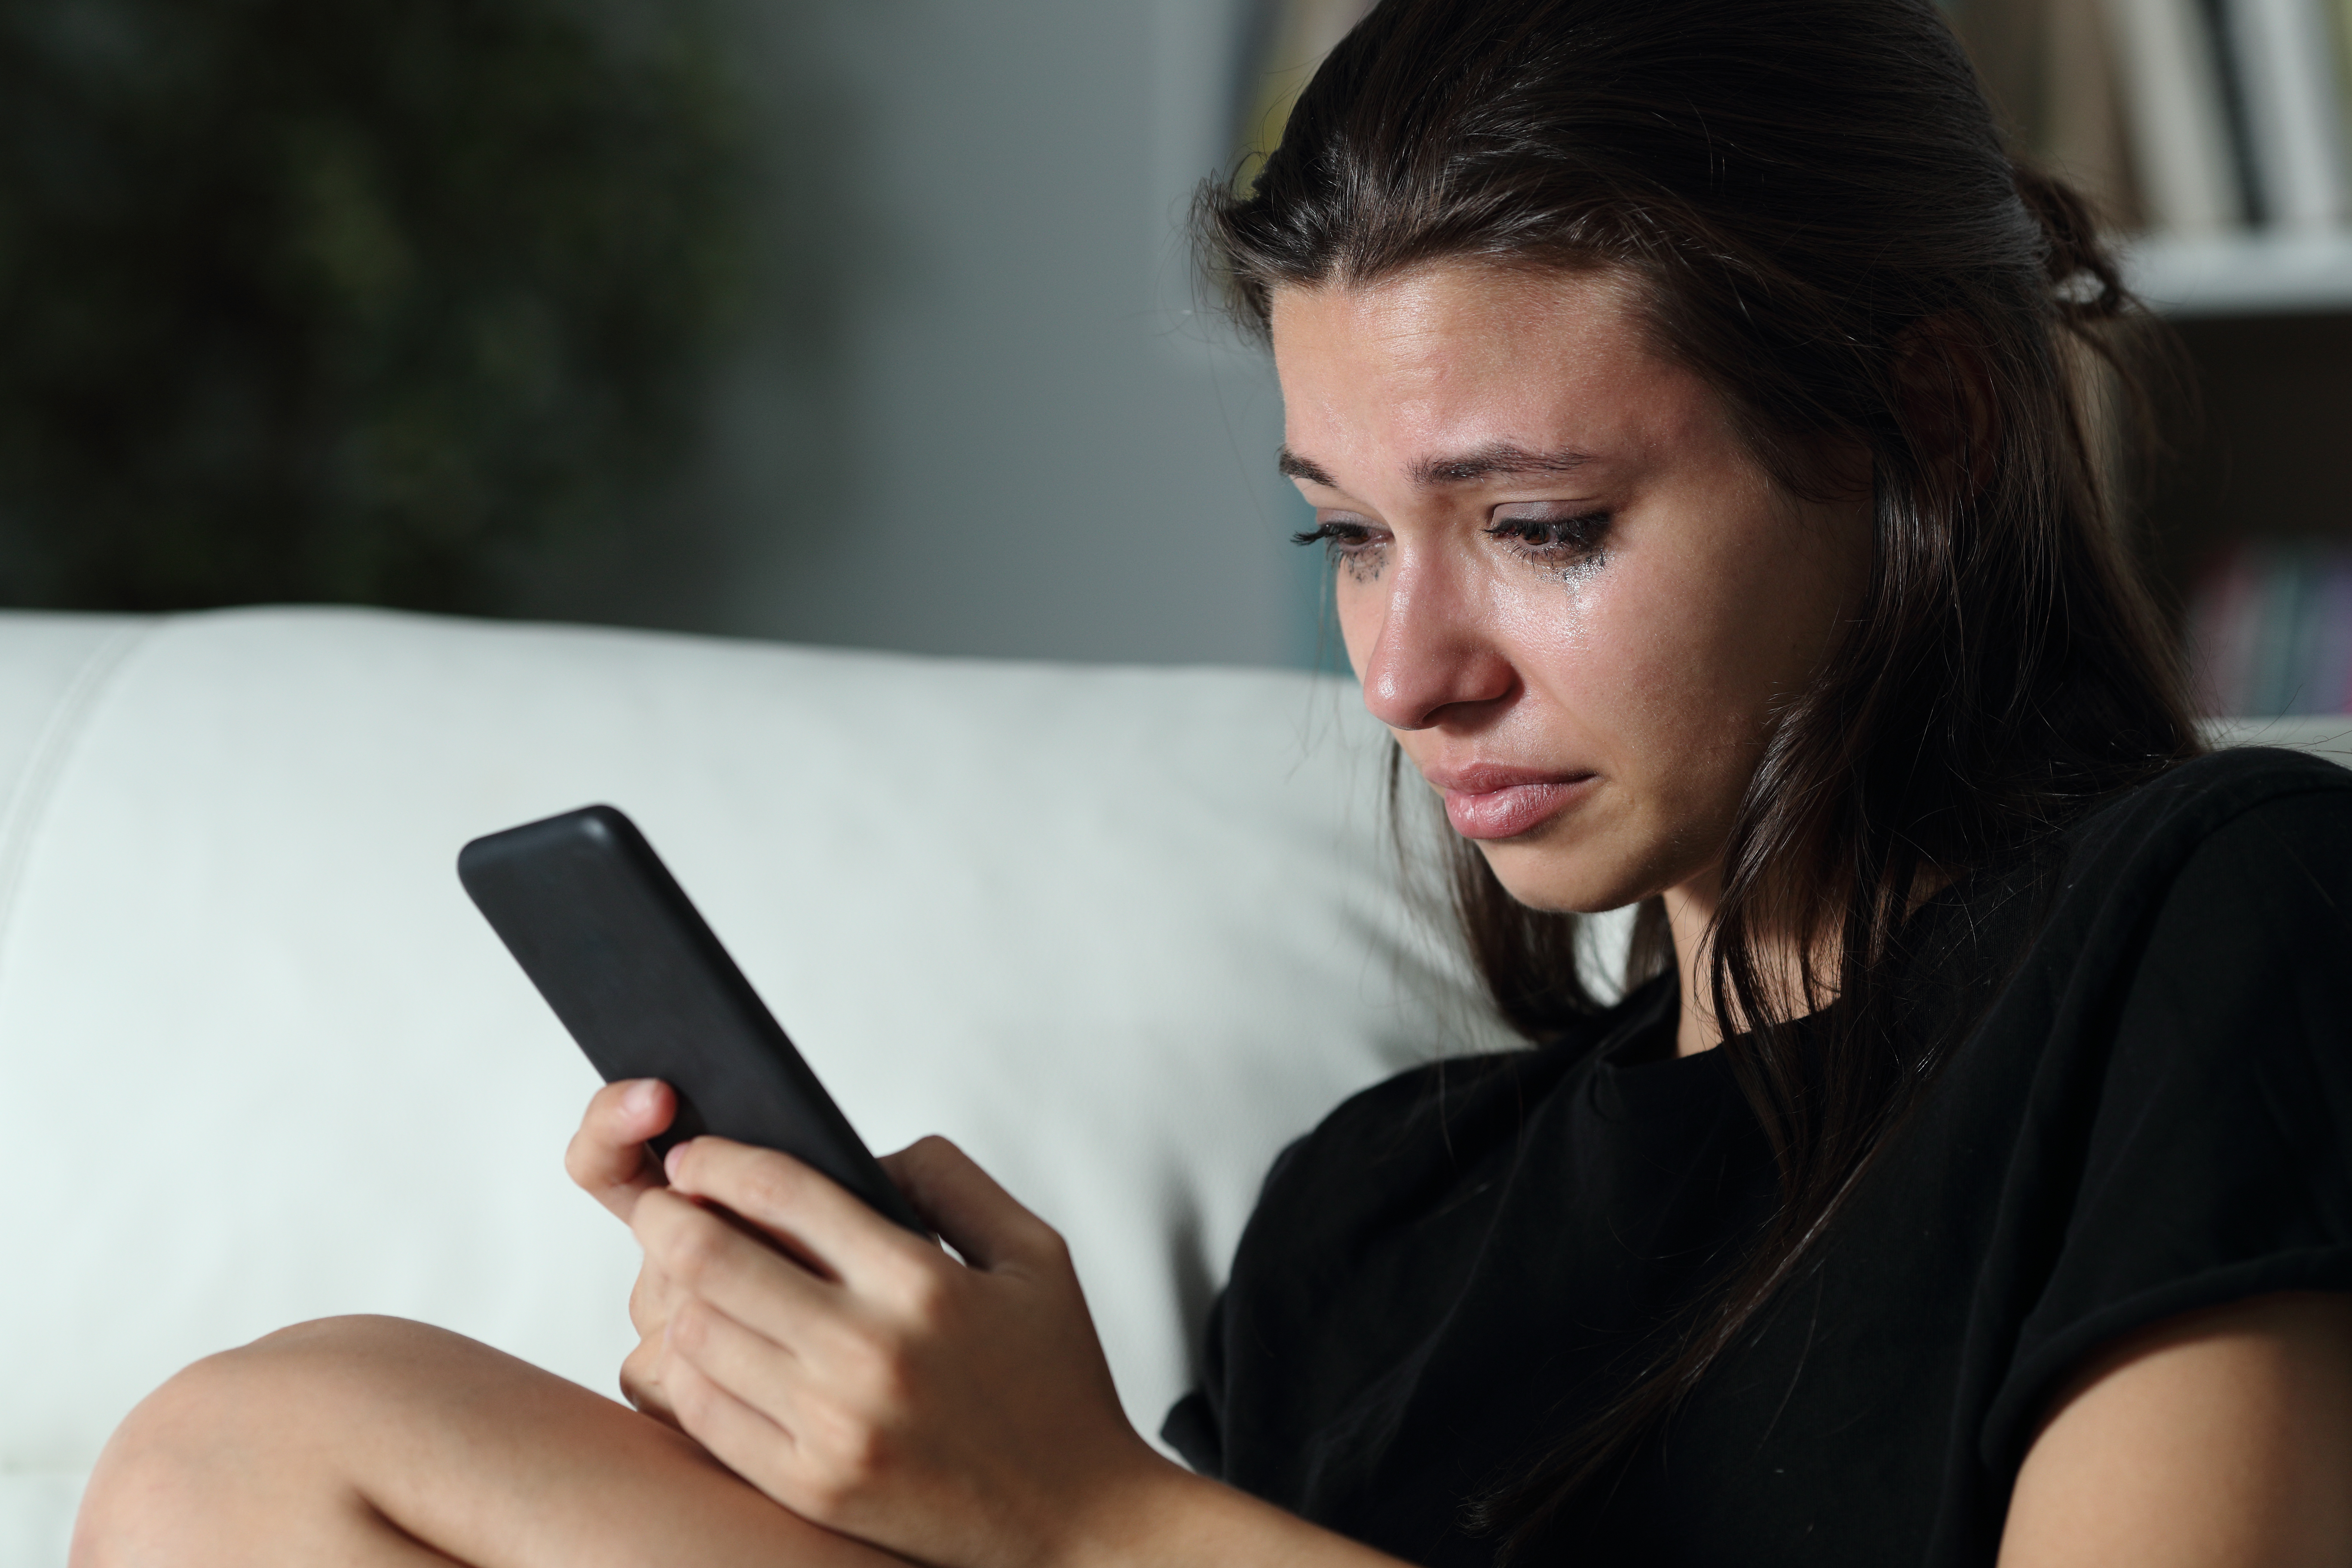 Une jeune fille aux yeux pleins de larmes est photographiée en train de regarder son téléphone portable. | Source : Shutterstock